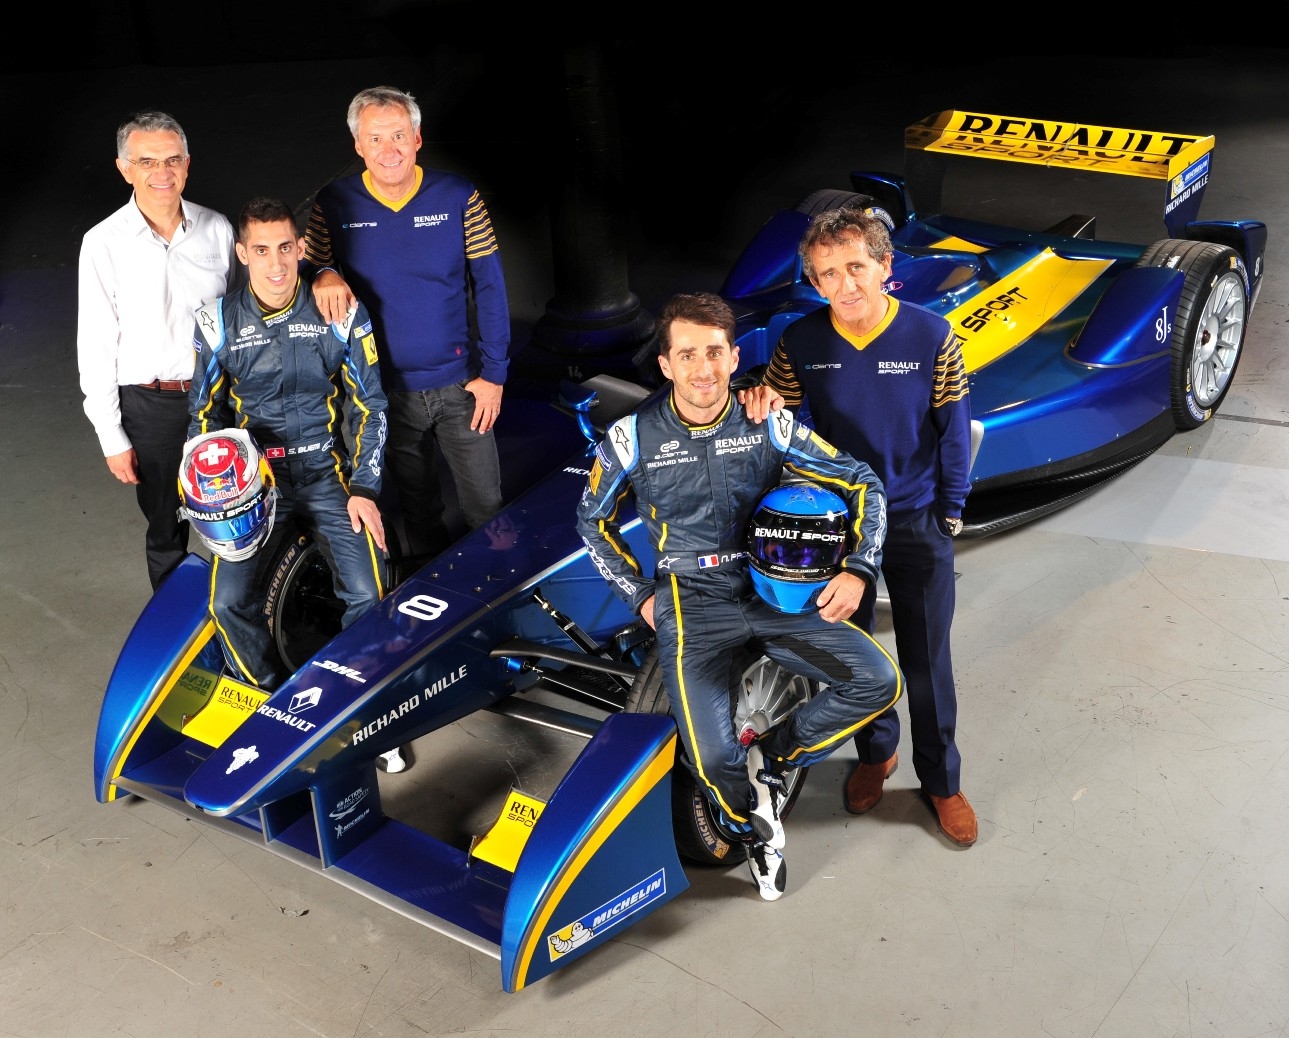 FIA Formula E: Renault sponsor ufficiale della scuderia e.dams-Renault